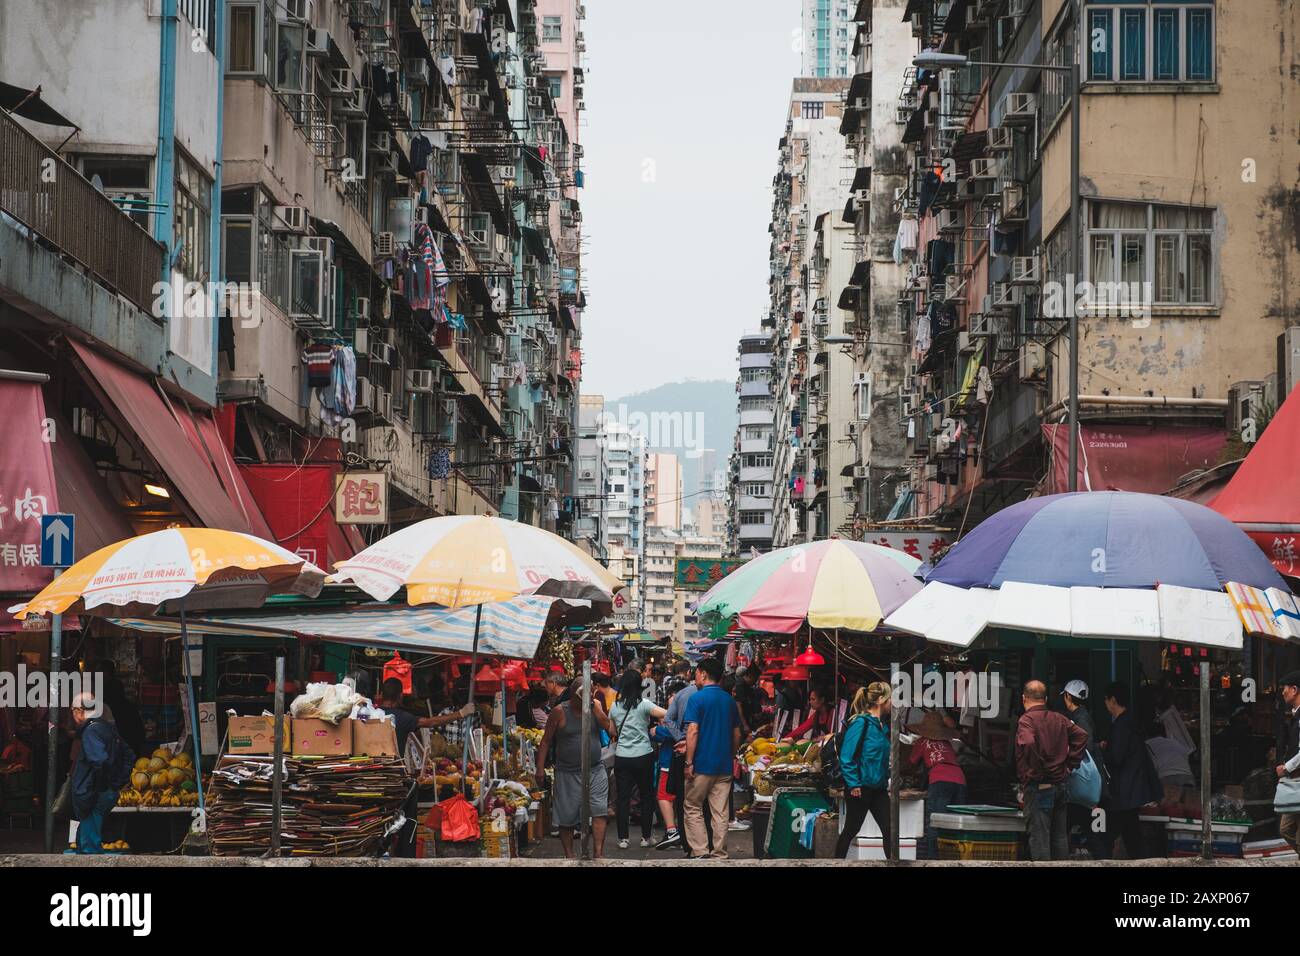 HongKong, China - November, 2019: People on crowded street food market in Hong Kong Stock Photo